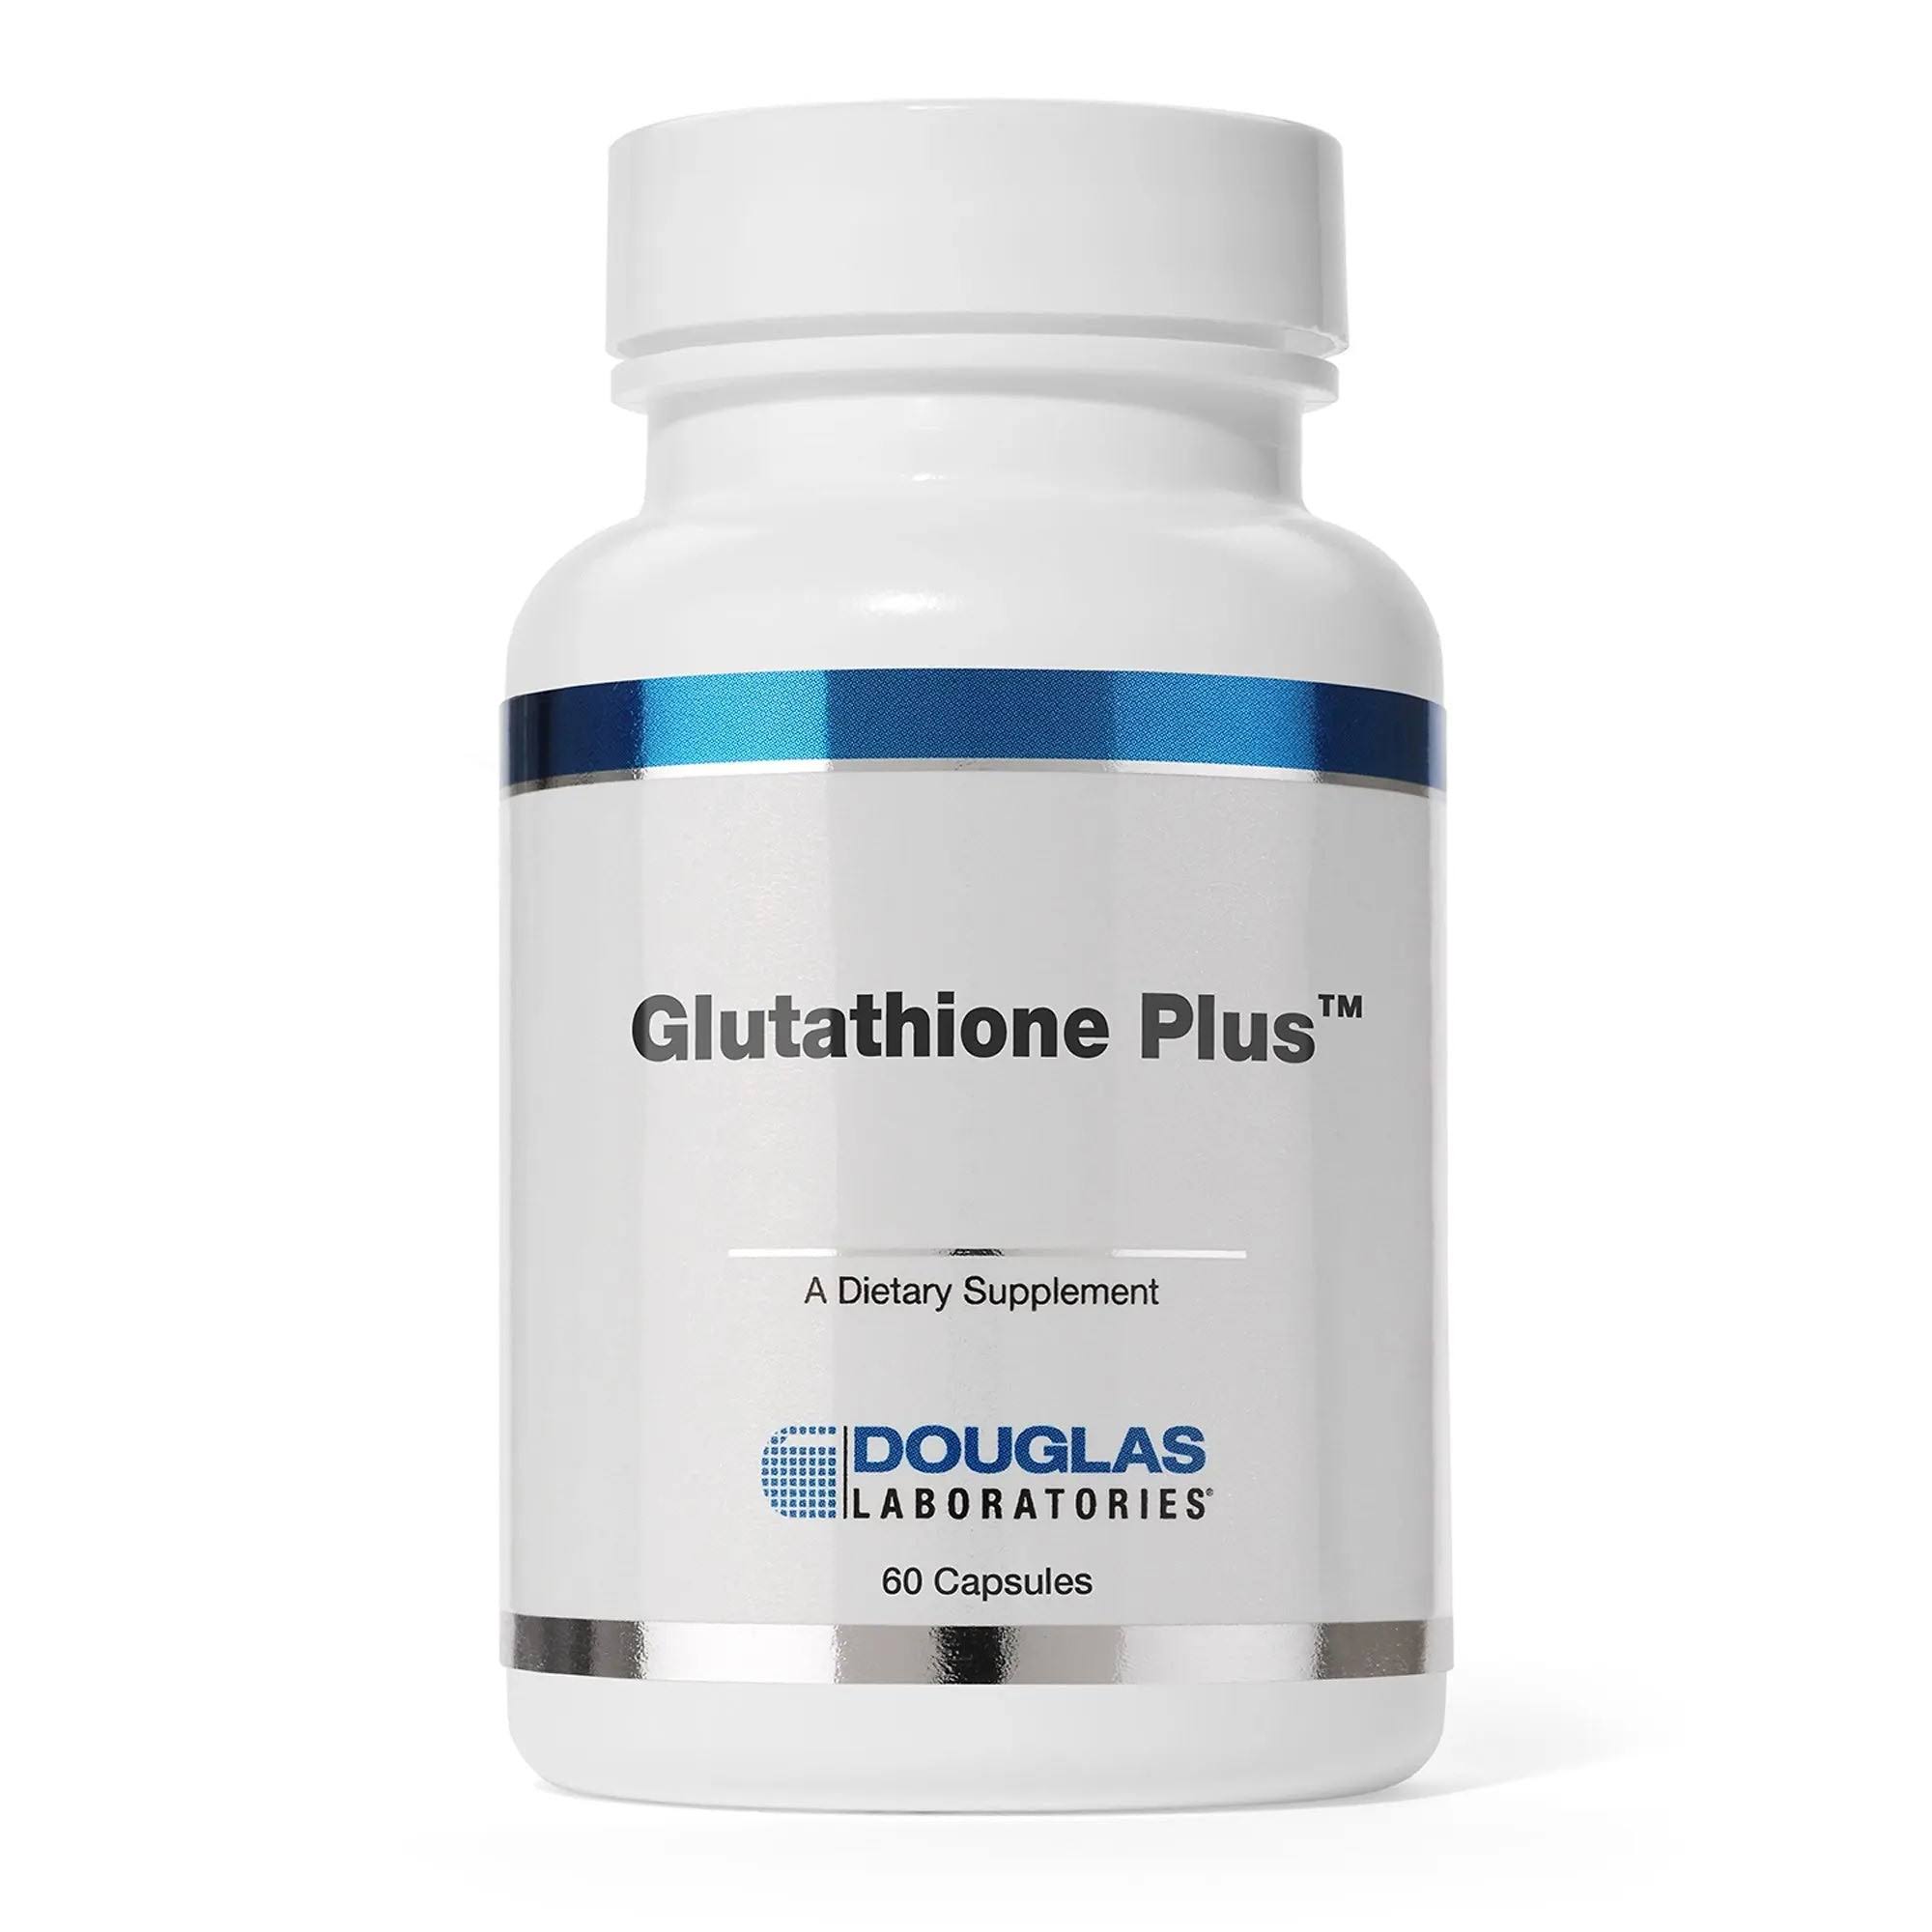 Douglas Laboratories - Glutathione Plus - 60 Capsules